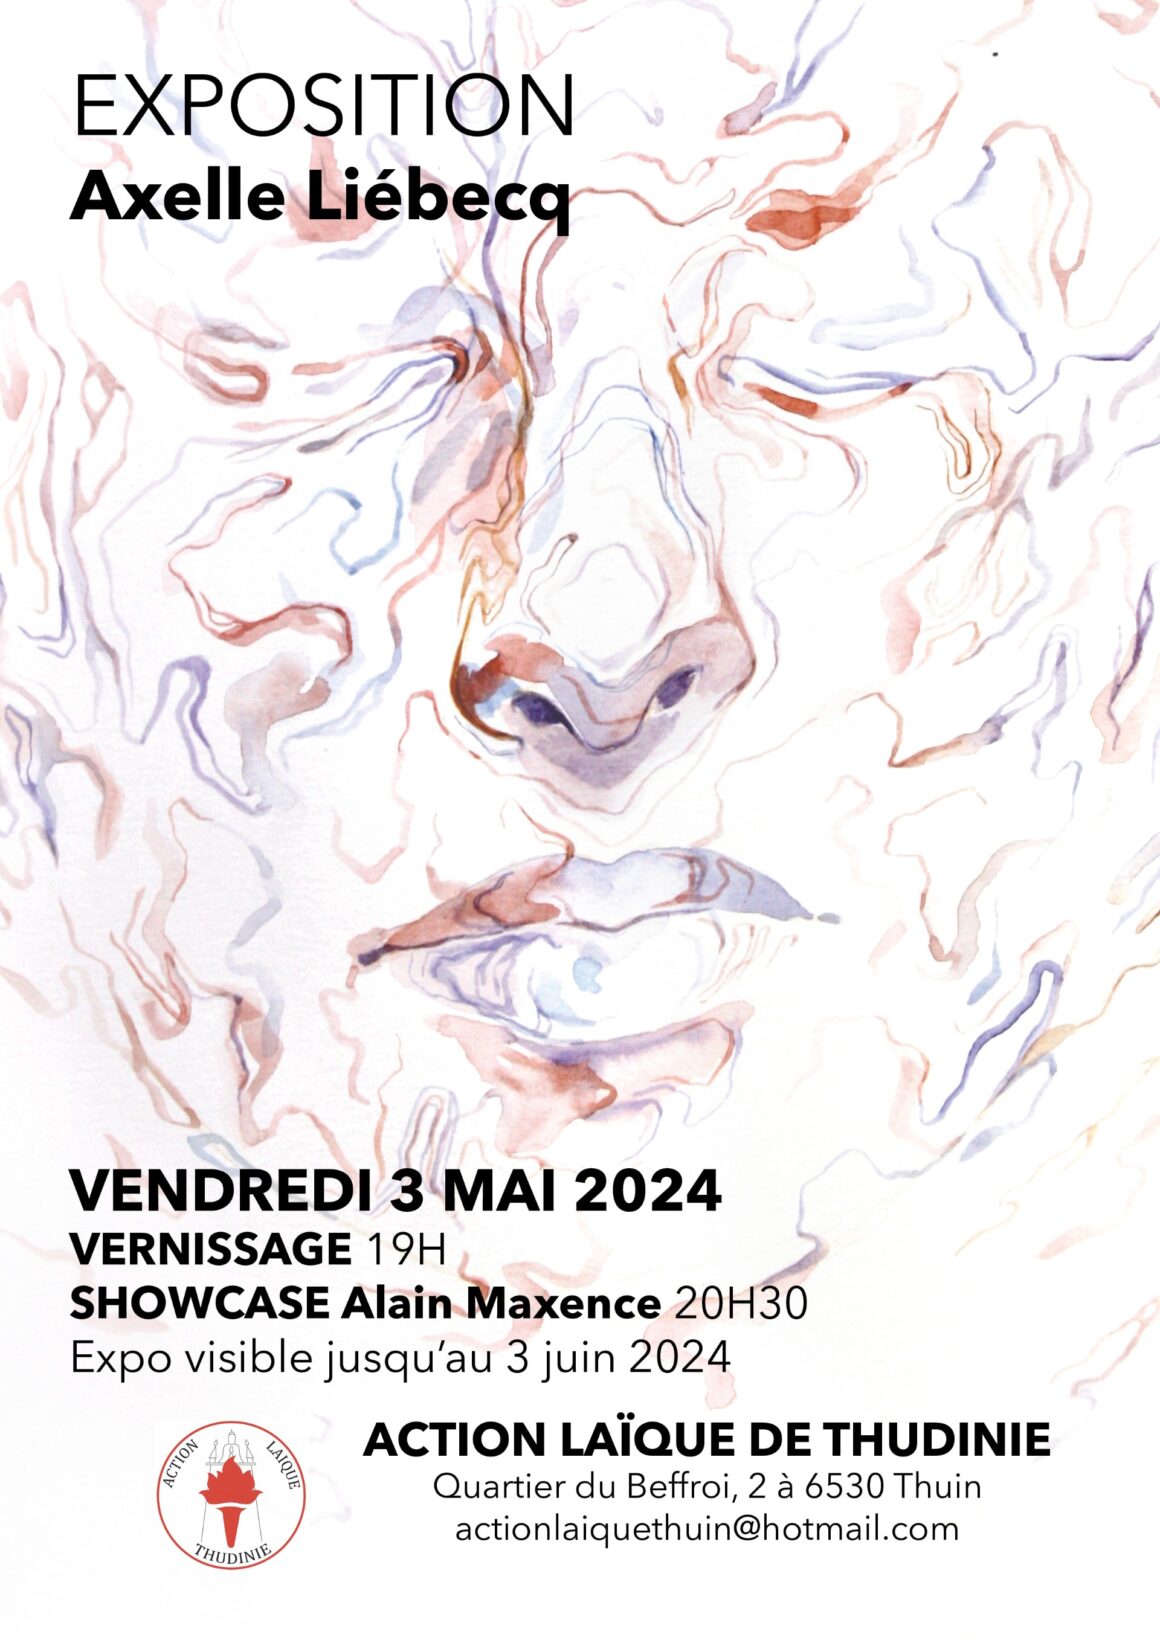 Exposition Axelle Liébecq & Showcase d’Alain Maxence